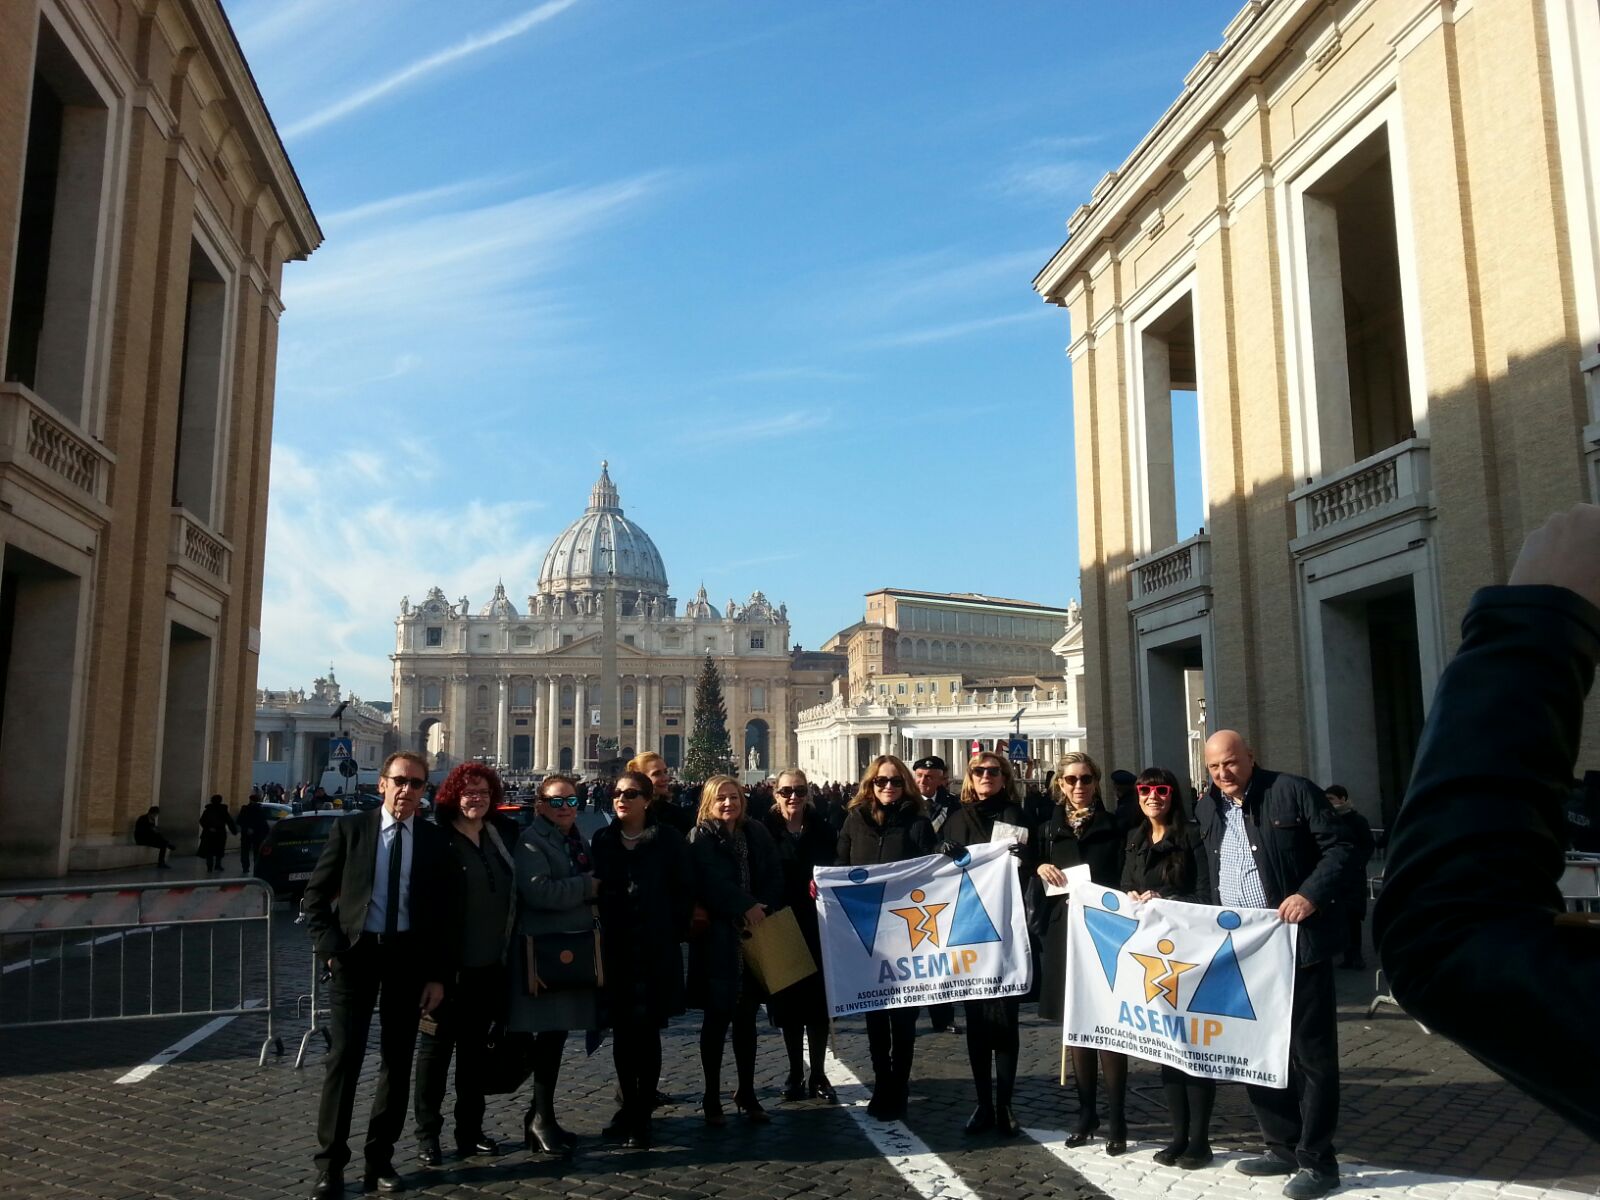 Asemip Visita al Vaticano 2015 -01